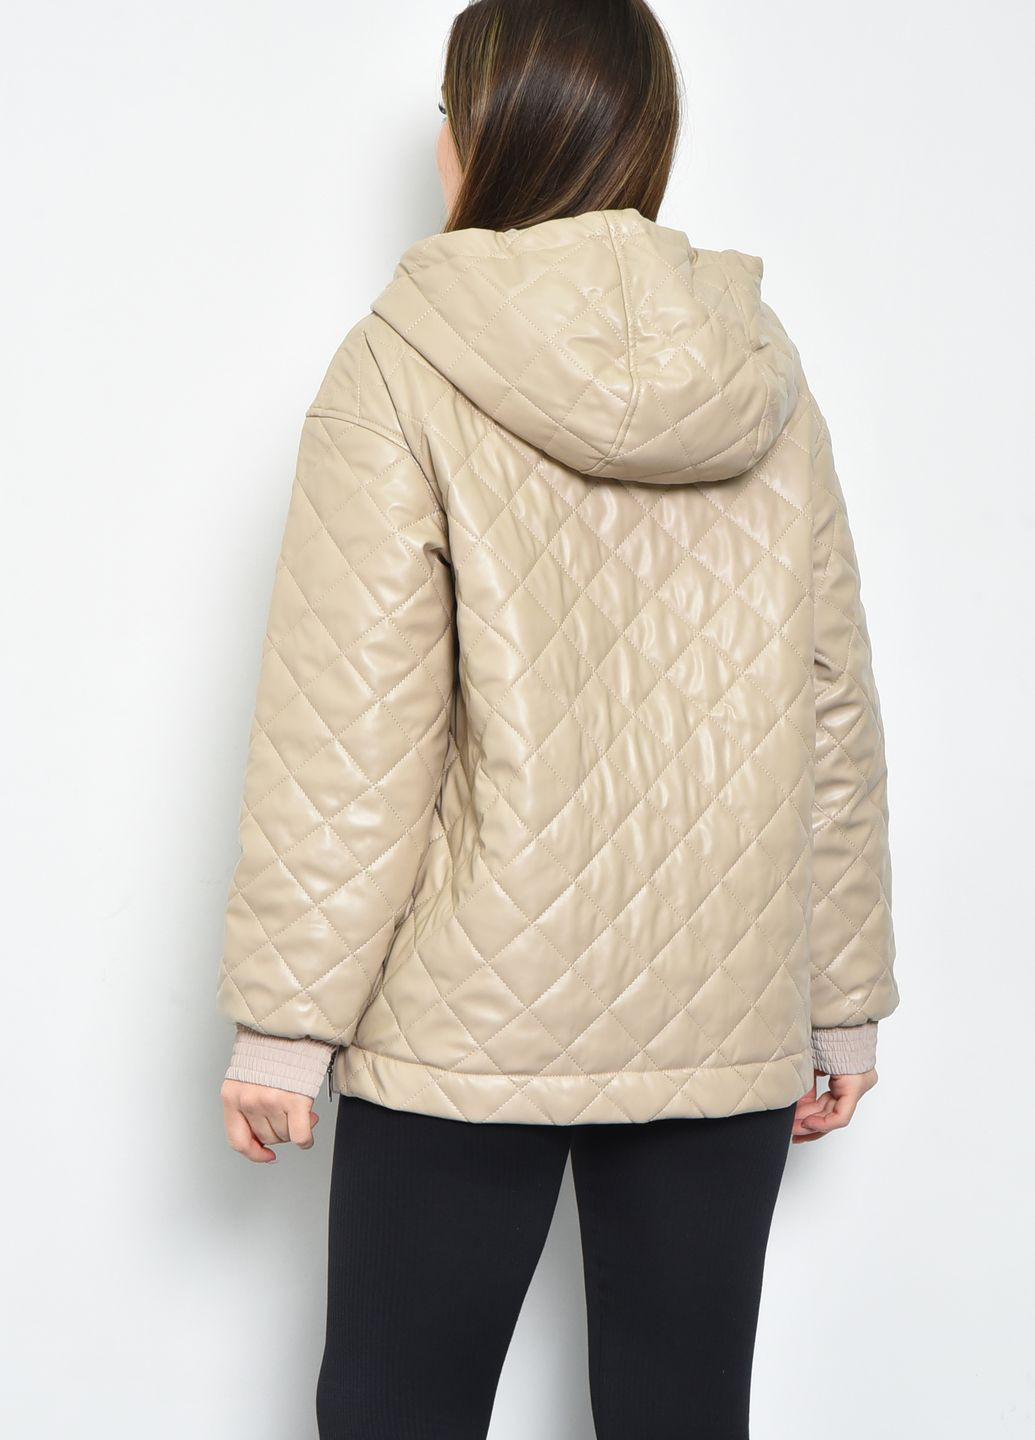 Бежевая демисезонная куртка-анорак женская демисезонная полубатальная из экокожи бежевого цвета Let's Shop